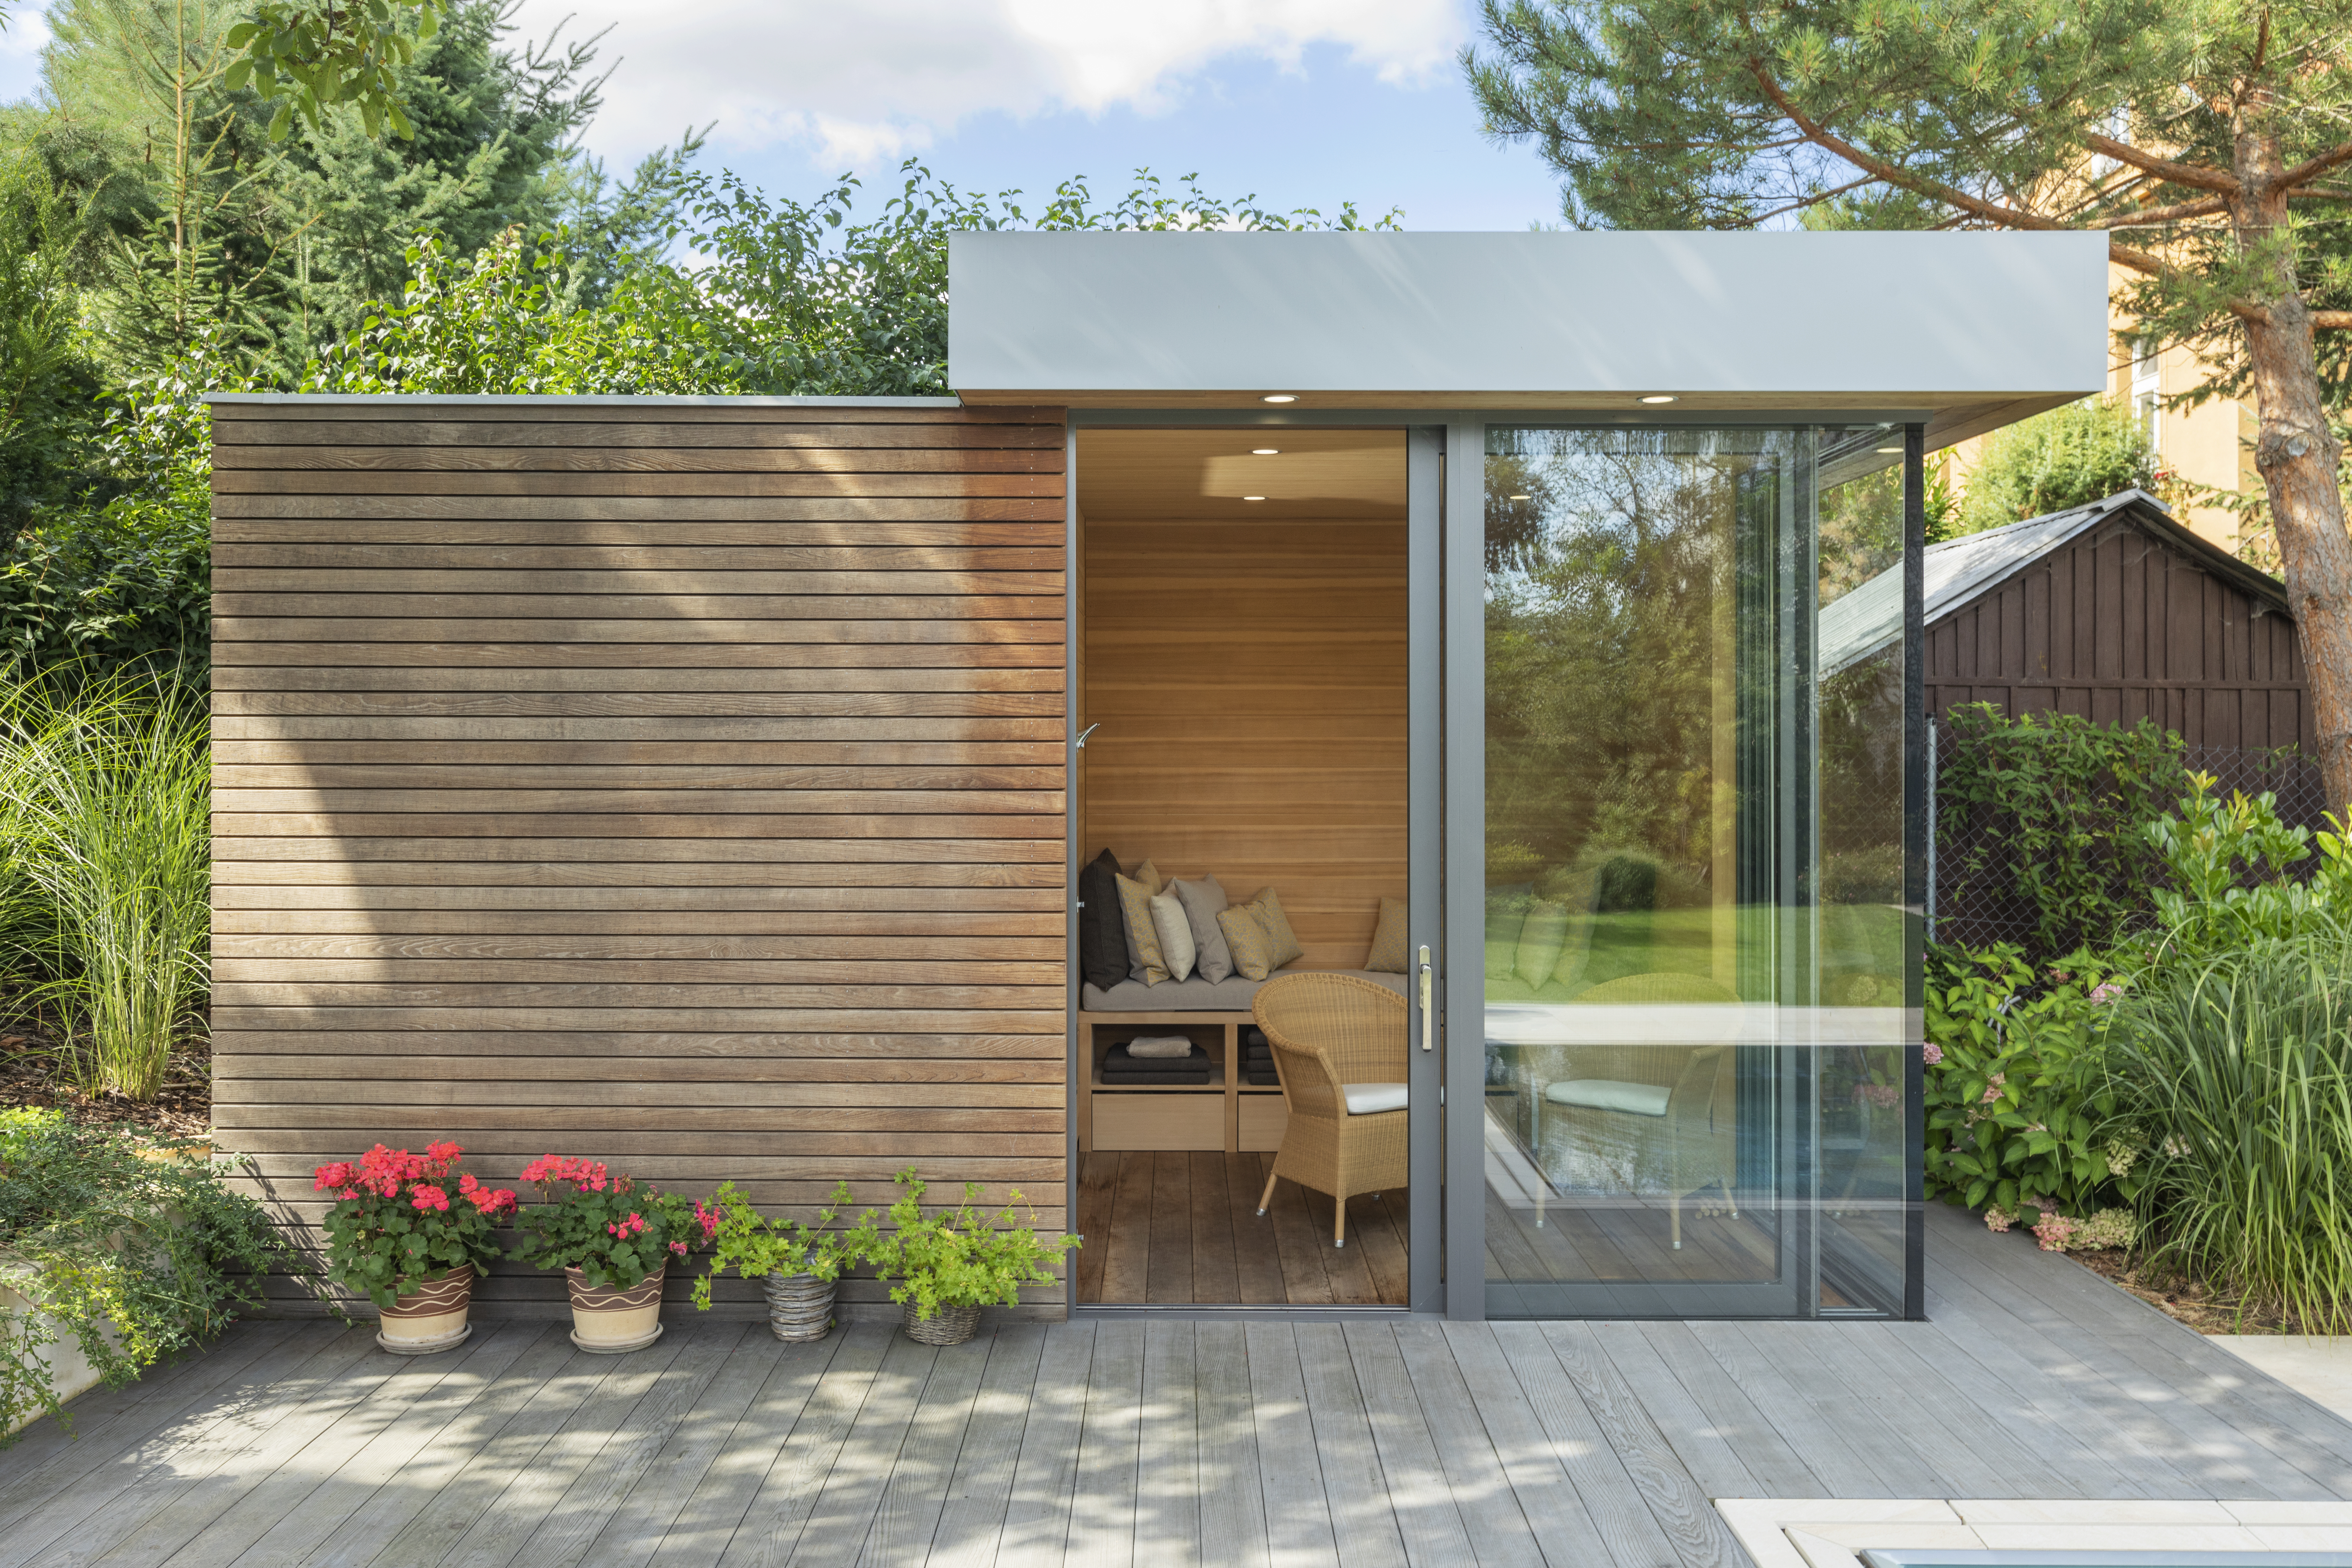 Outdoor garden private sauna with luxury design